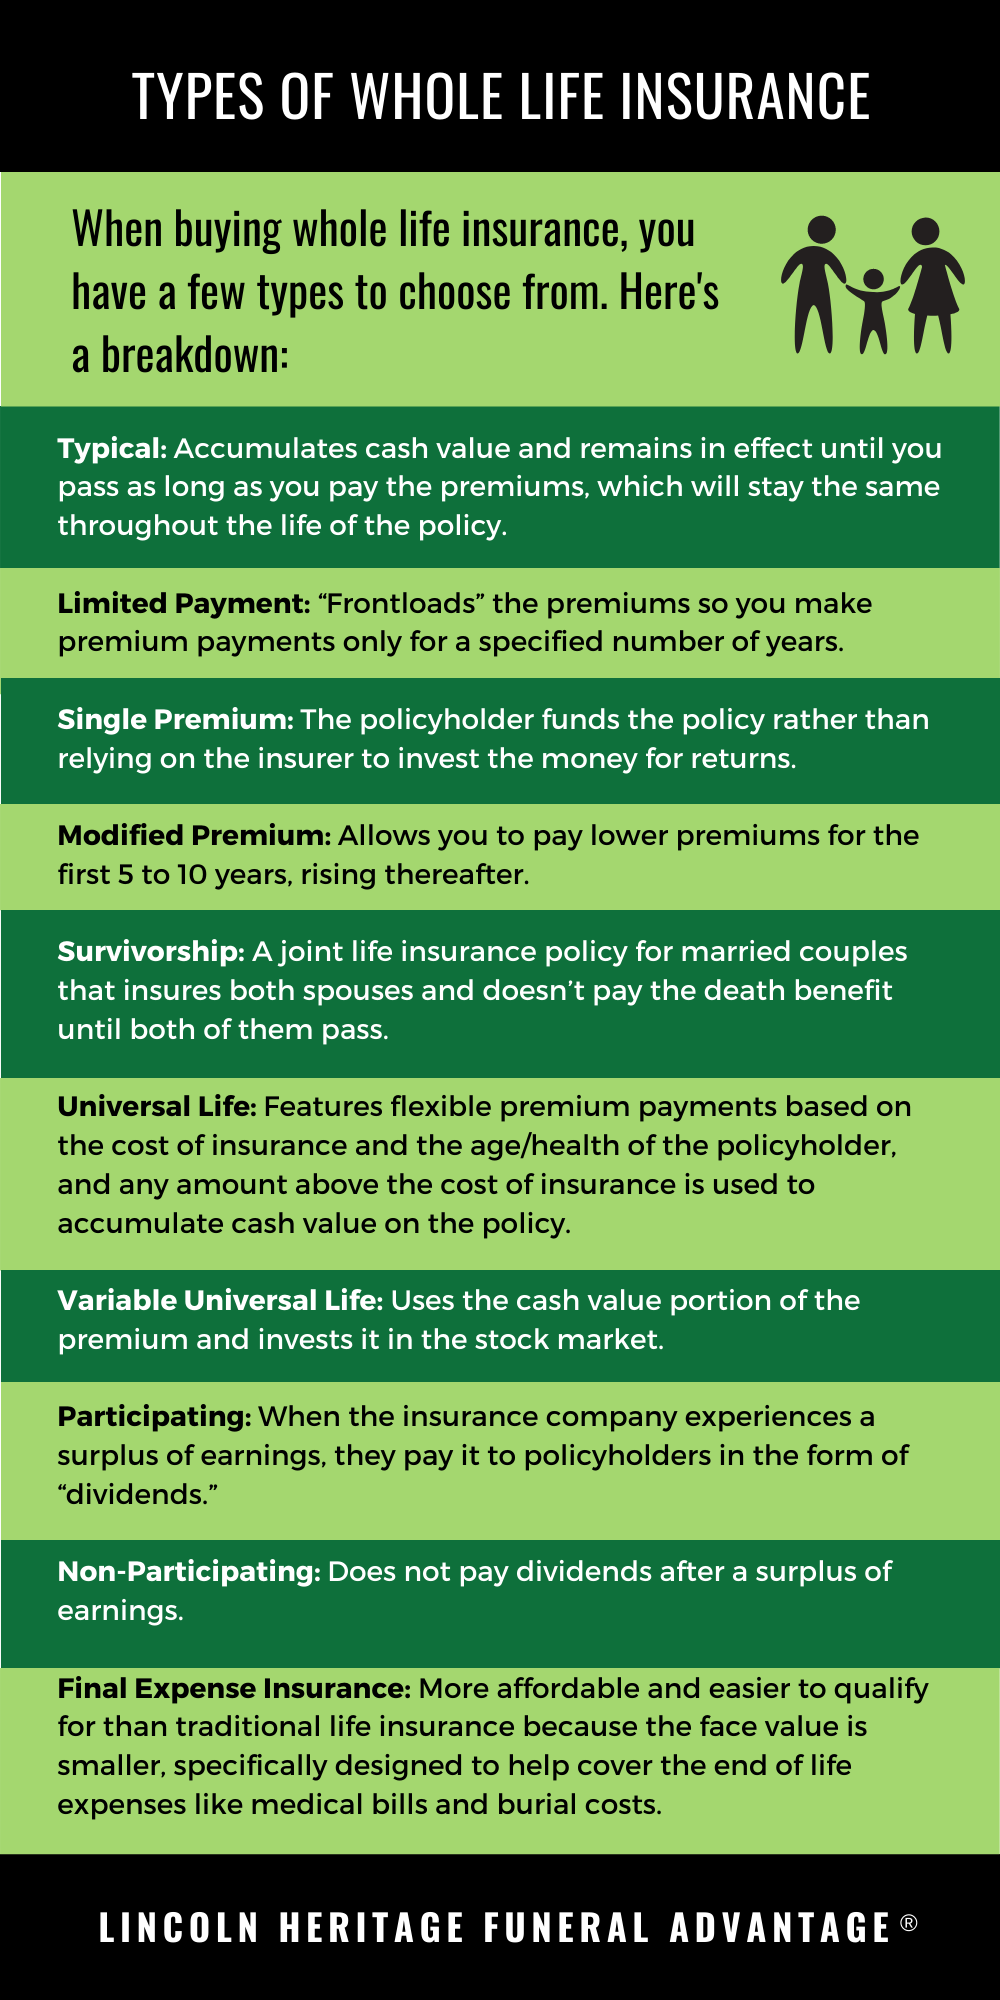 How does insurance company make money?